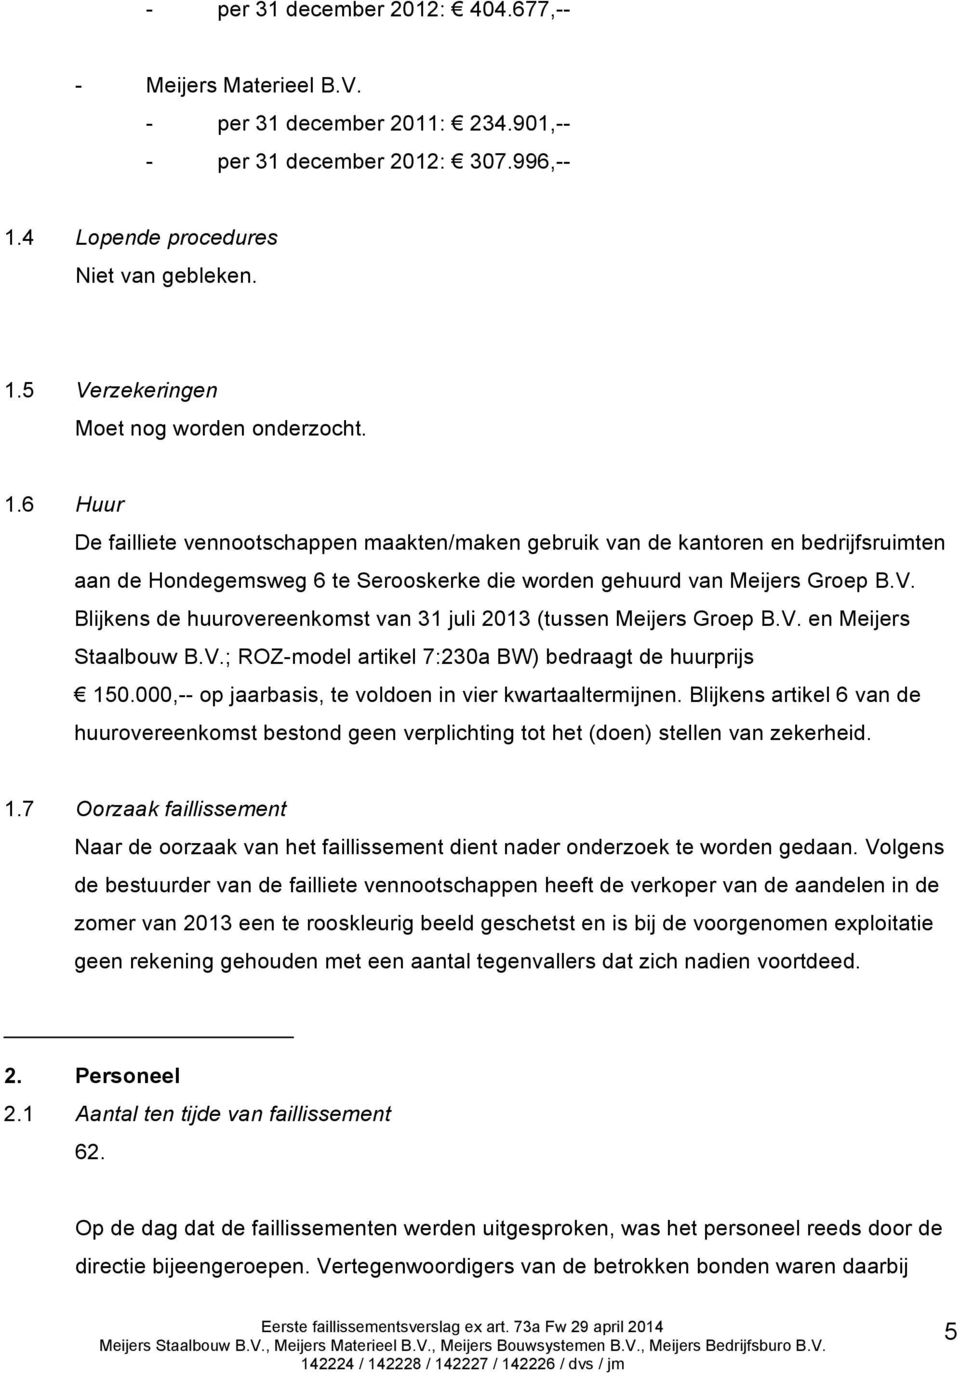 Blijkens de huurovereenkomst van 31 juli 2013 (tussen Meijers Groep B.V. en Meijers Staalbouw B.V.; ROZ-model artikel 7:230a BW) bedraagt de huurprijs 150.